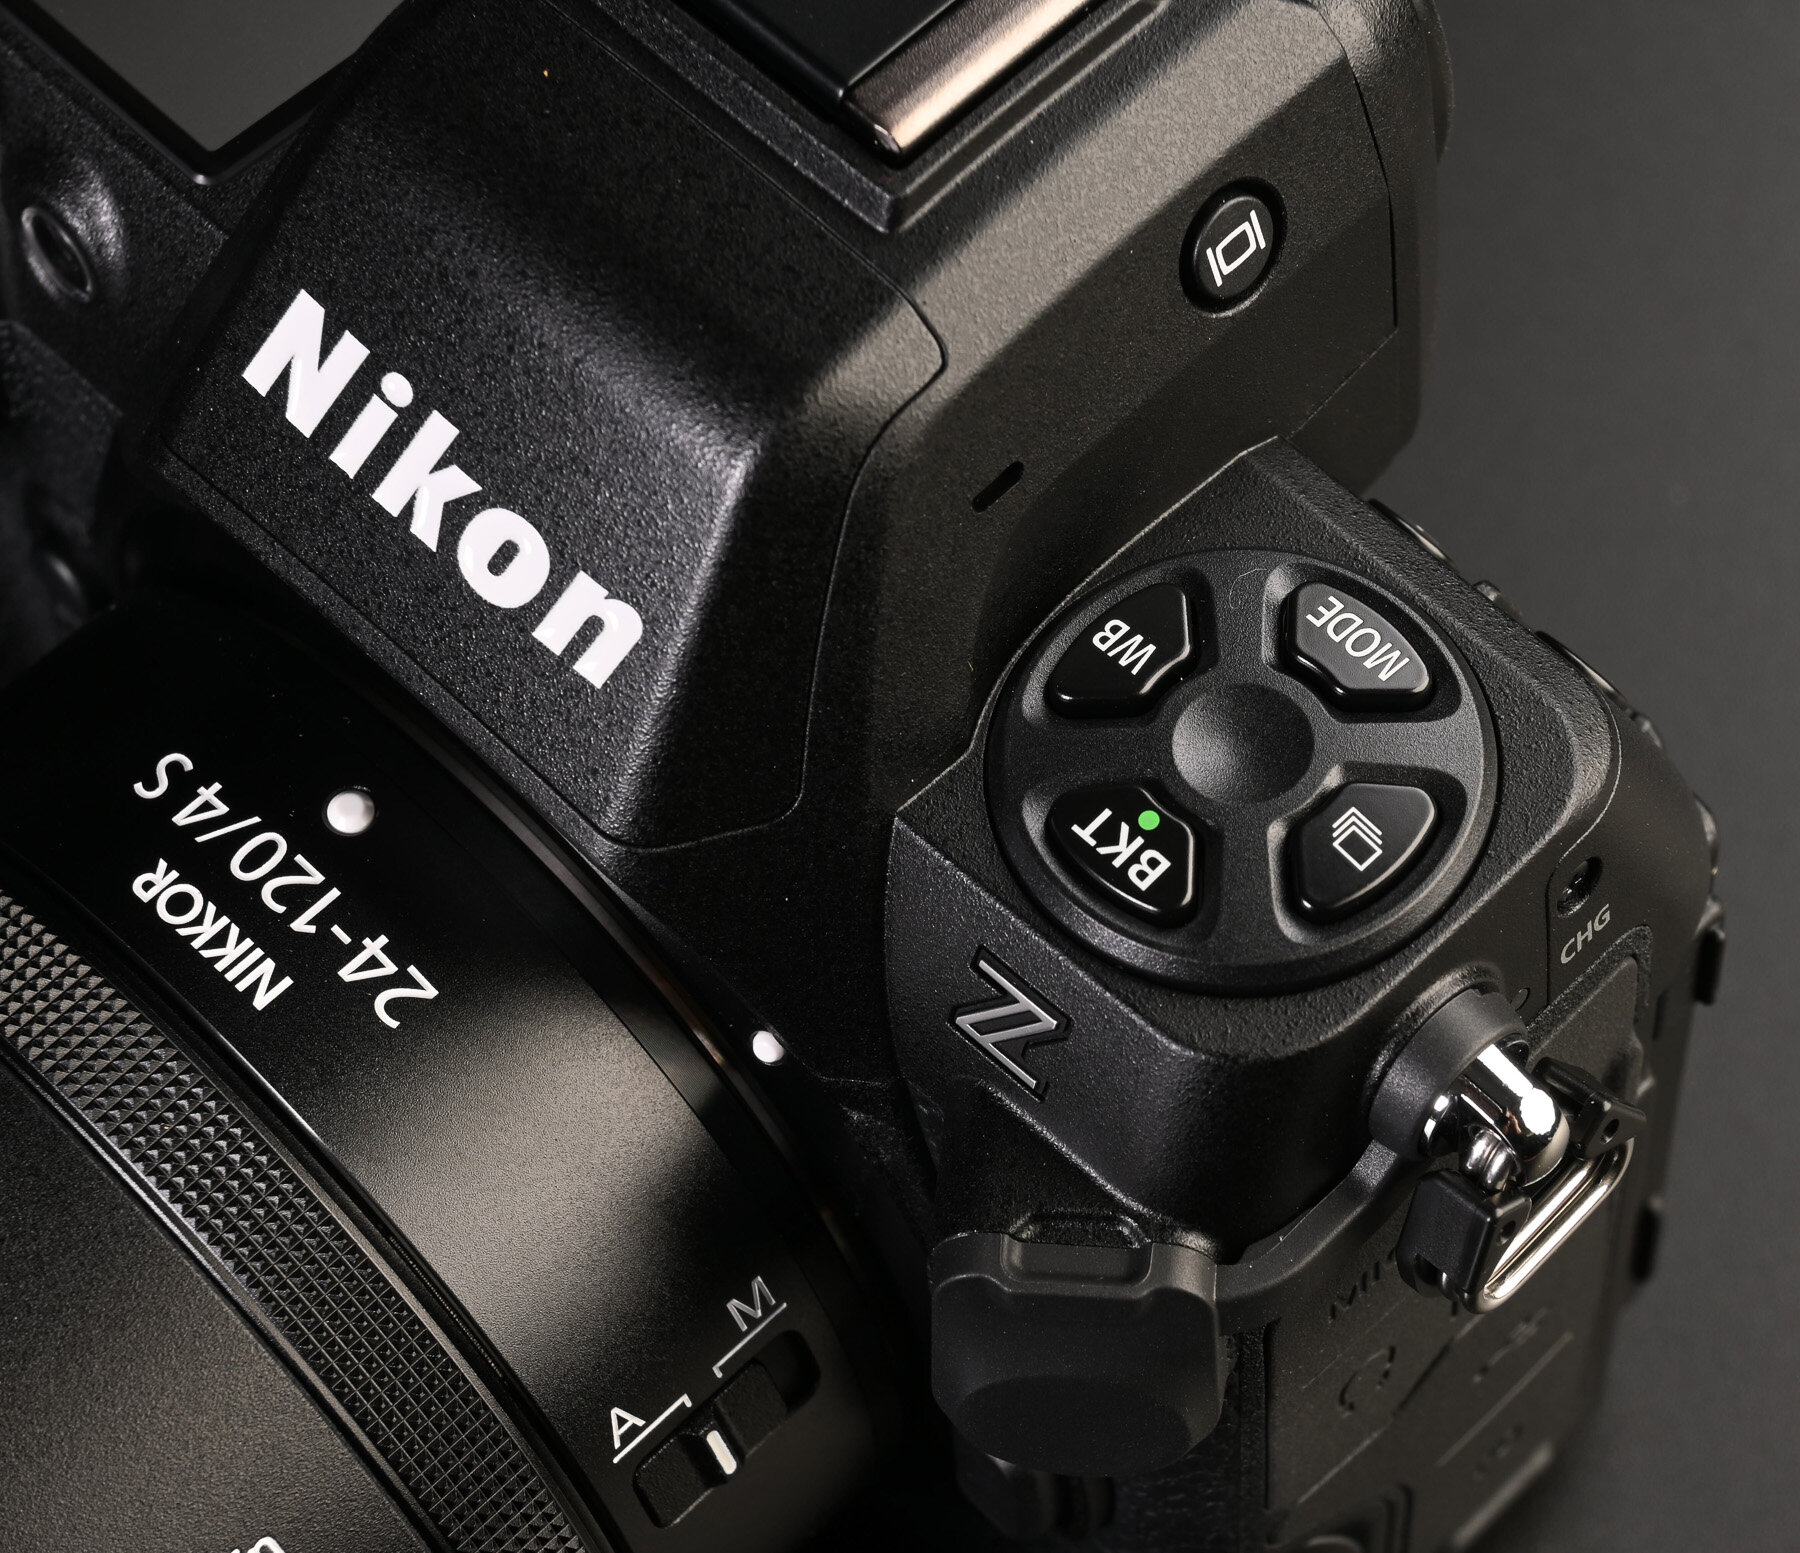 Maggiori informazioni su "Perché dovreste comprare una Nikon Z8 (dedicato a chi ha reflex oppure Z6/Z7/Z5/Zdx)"